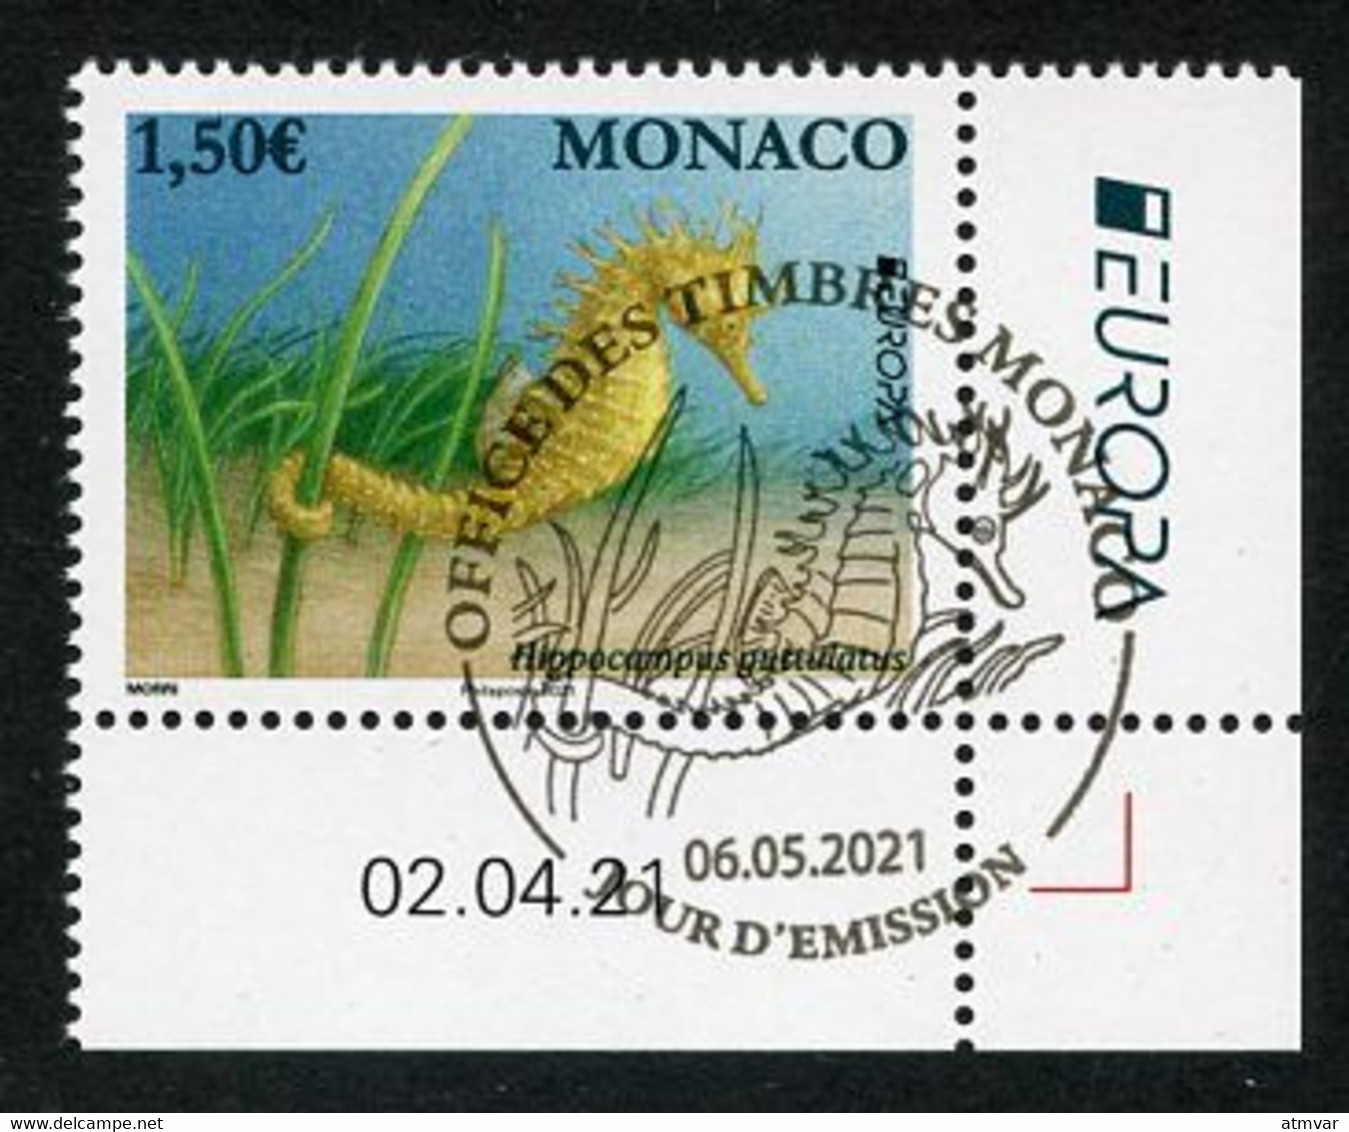 MONACO (2021) EUROPA 2021 Espèces Menacées, Hippocampe, Hippocampus Guttulatus, Seahorse - Coin Daté - Used Stamps